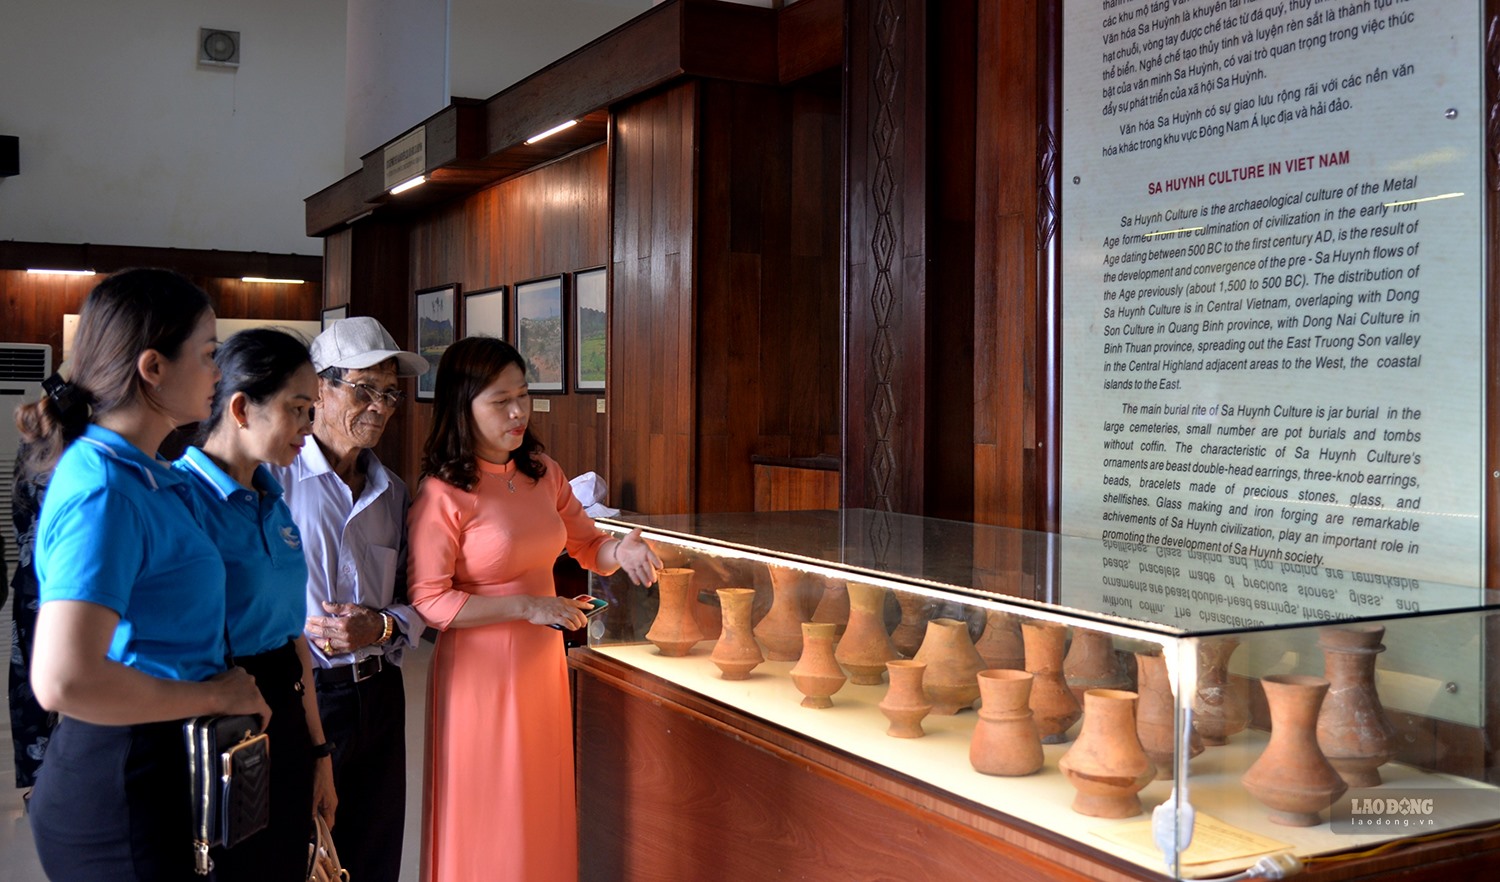 Nhà trưng bày Văn hóa Sa Huỳnh đang lưu giữ, trưng bày hơn 300 hiện vật, ảnh, tài liệu theo chủ đề lịch sử phát hiện, nghiên cứu Văn hóa Sa Huỳnh ở Quảng Ngãi. Nơi đây đón nhiều du khách và người dân địa phương đến tham quan, tìm hiểu. Ảnh: Ngọc Viên